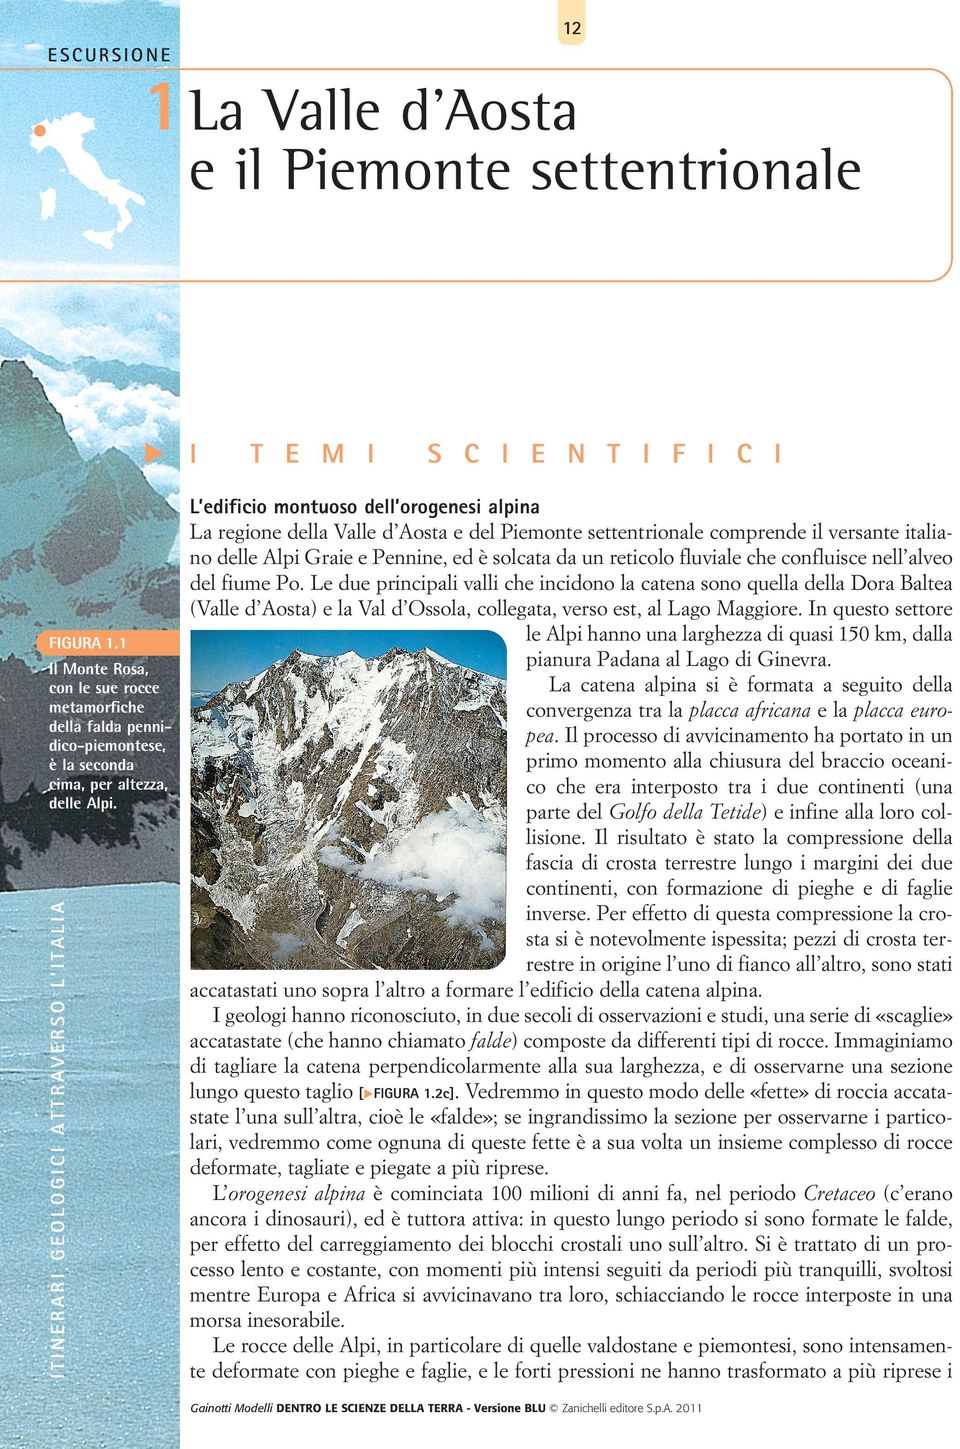 T E M I S C I E N T I F I C I L edificio montuoso dell orogenesi alpina La regione della Valle d Aosta e del Piemonte settentrionale comprende il versante italiano delle Alpi Graie e Pennine, ed è